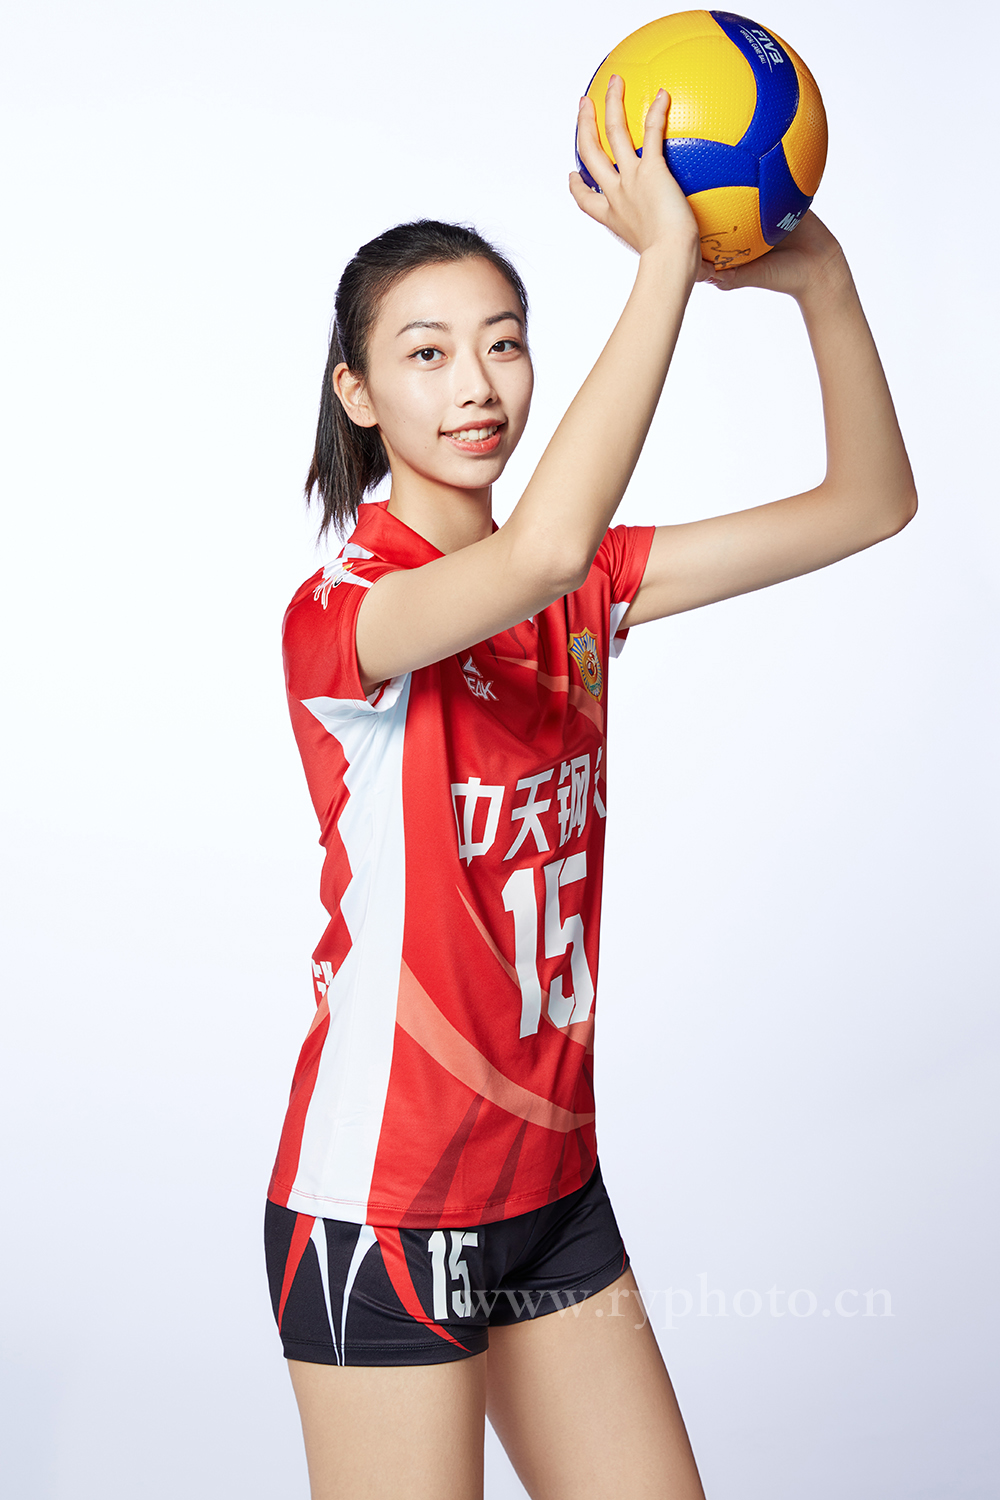 江苏女排定妆照-体育运动员形象照宣传照广告宣传图片 中国女排国家队(图3)